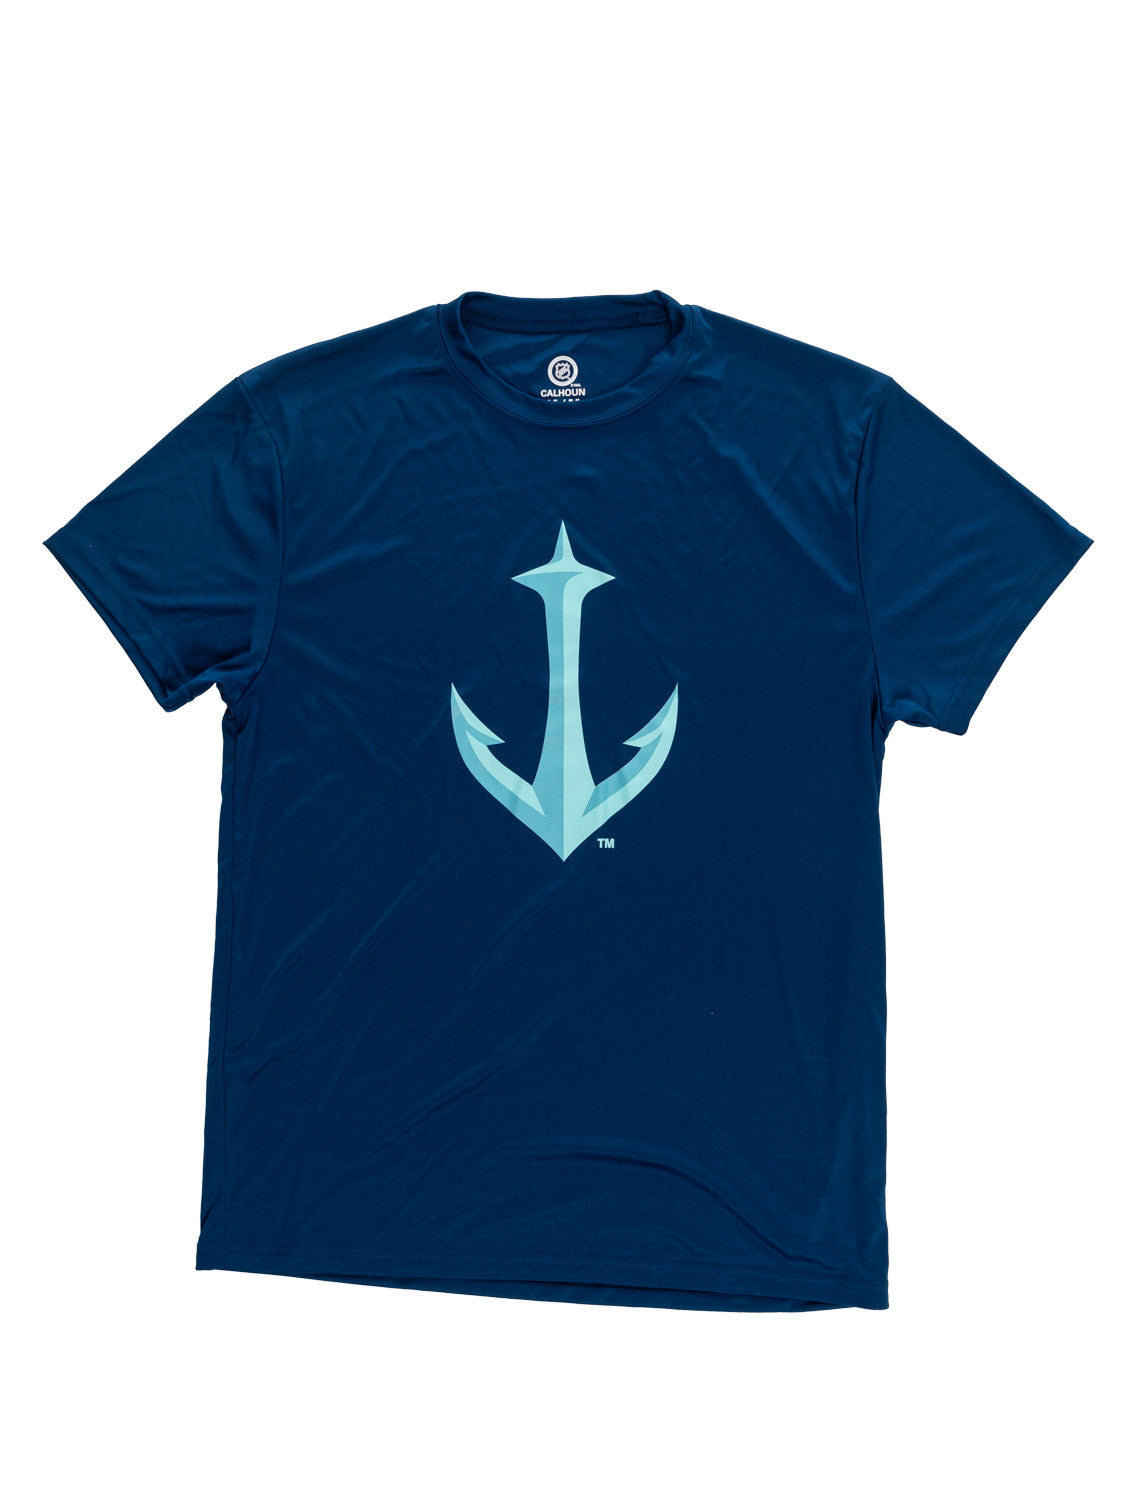 Seattle Kraken Short Sleeve Rashguard T Shirt - Alternate Logo